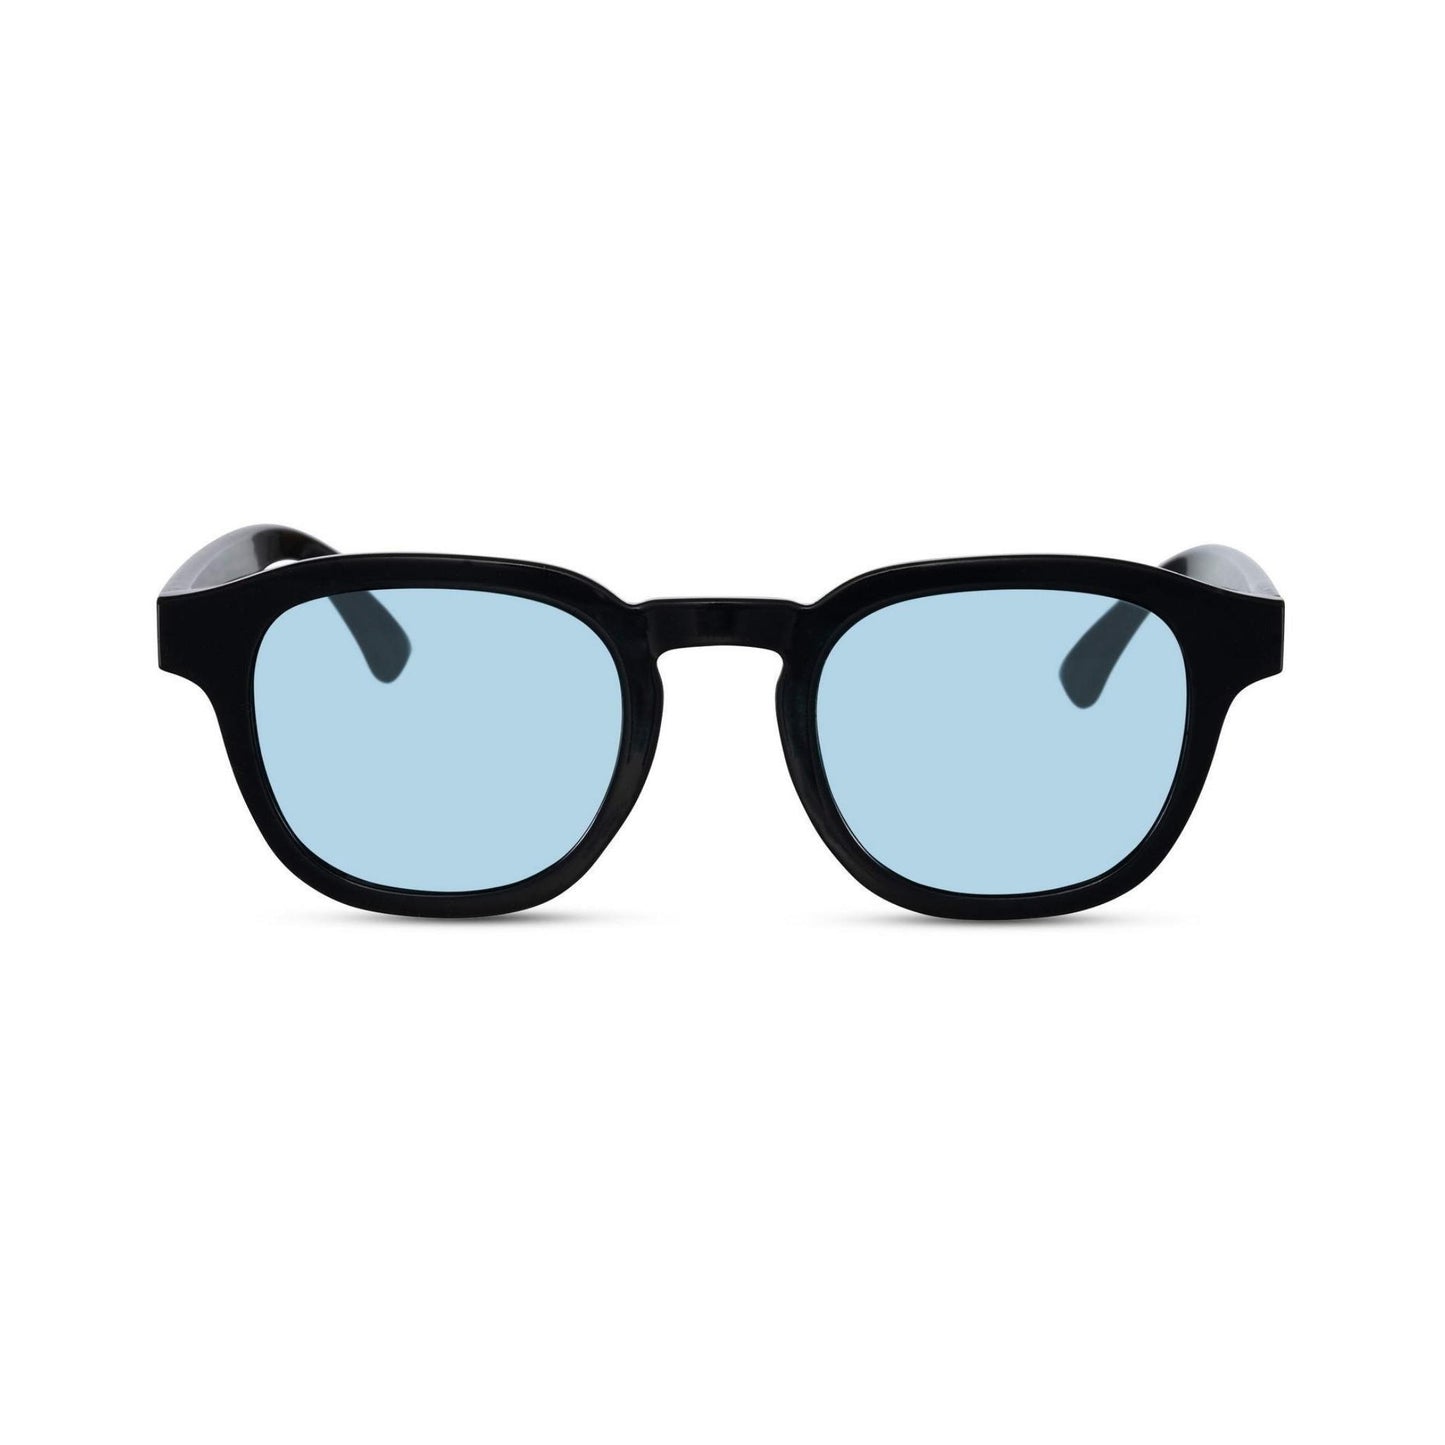 Γυαλιά ηλίου Montreal της Exposure Sunglasses με προστασία UV400 με μαύρο σκελετό και μπλε φακό.